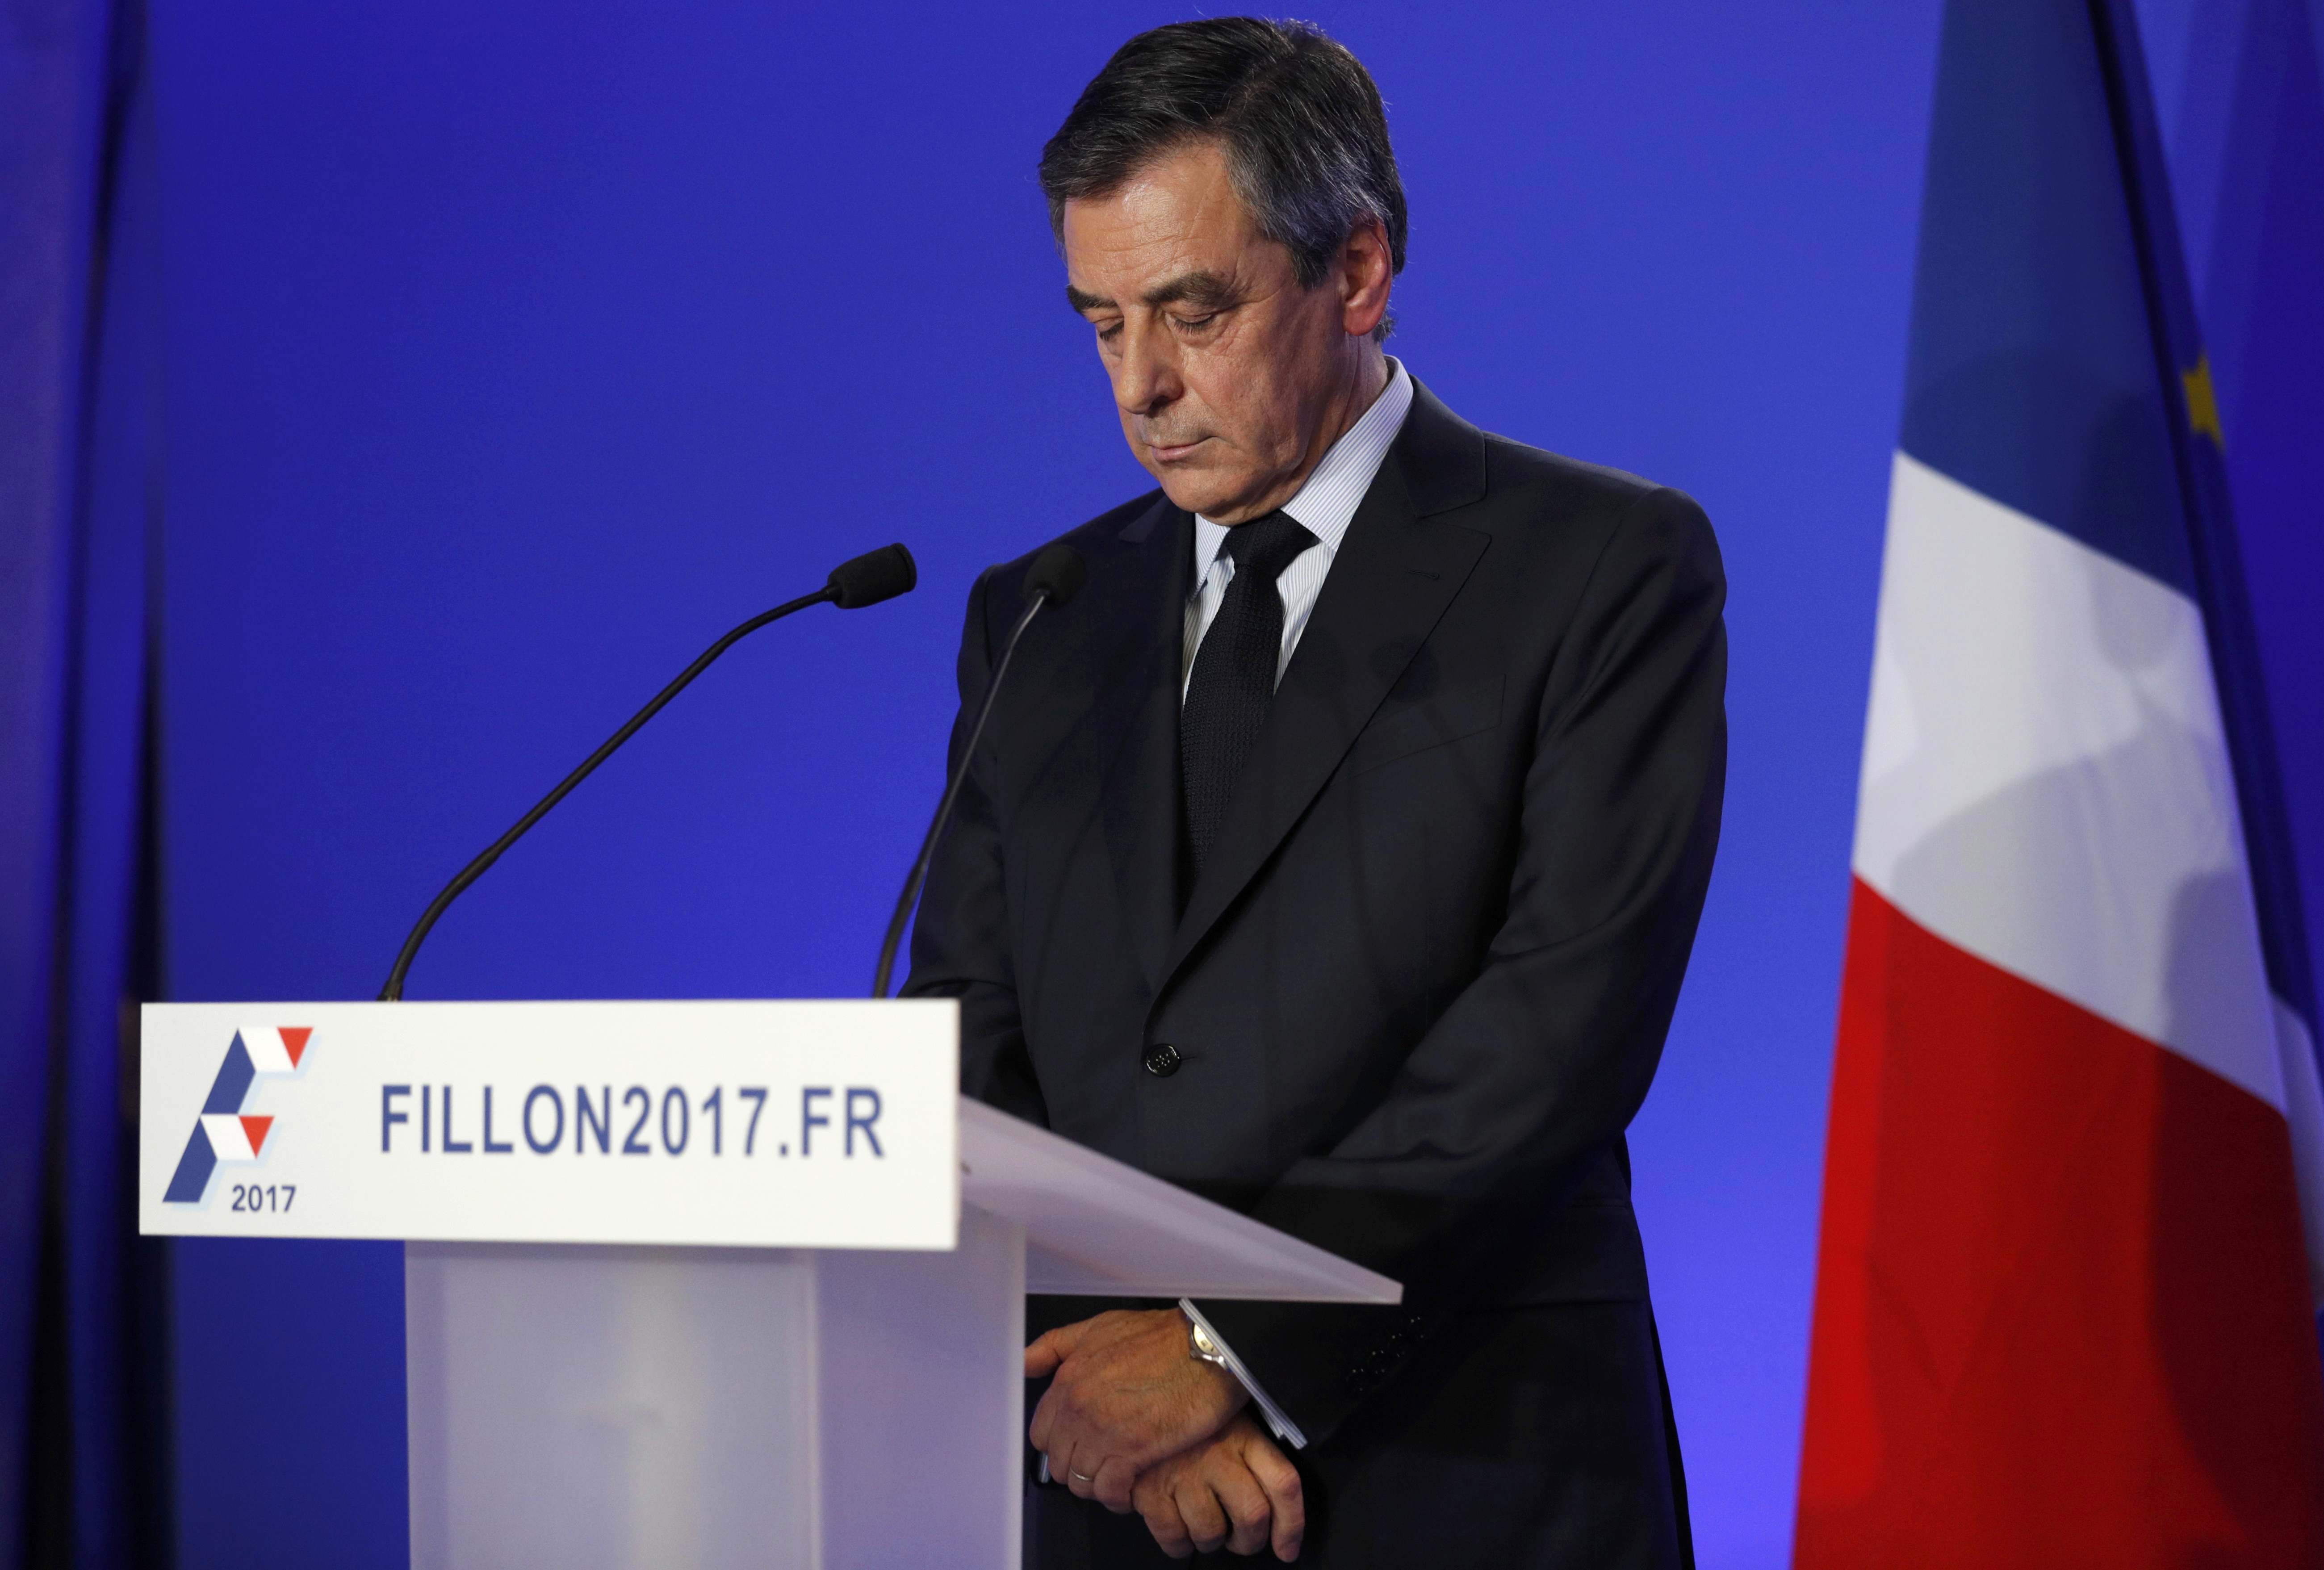 Fillon mantendrá su candidatura pese a las acusaciones de desvío de fondos públicos